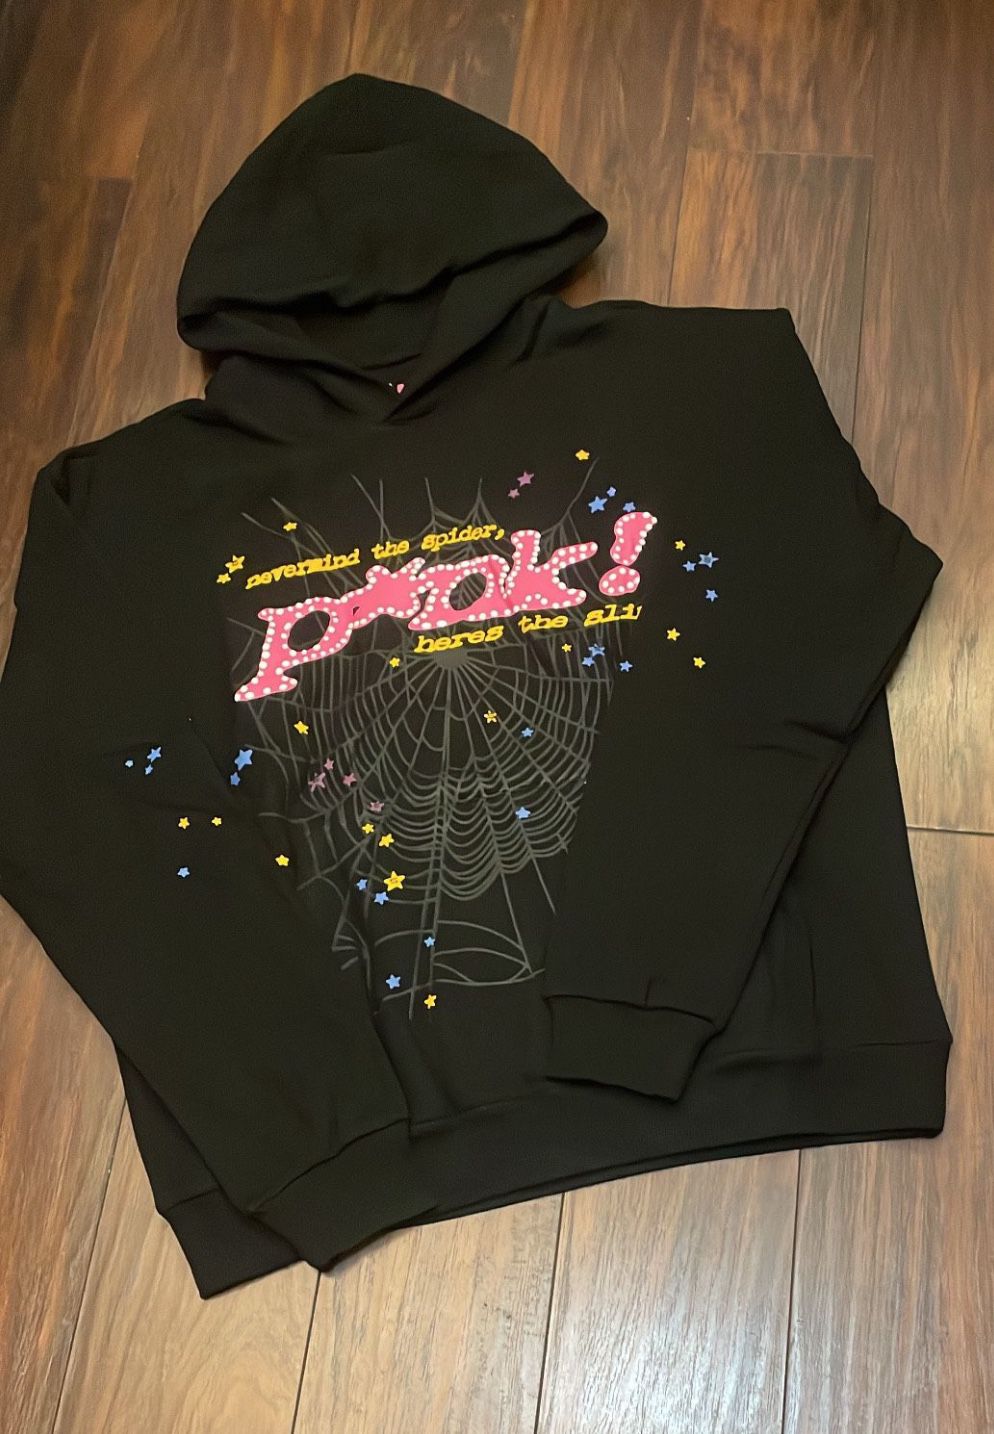 Sp5der hoodie Pink